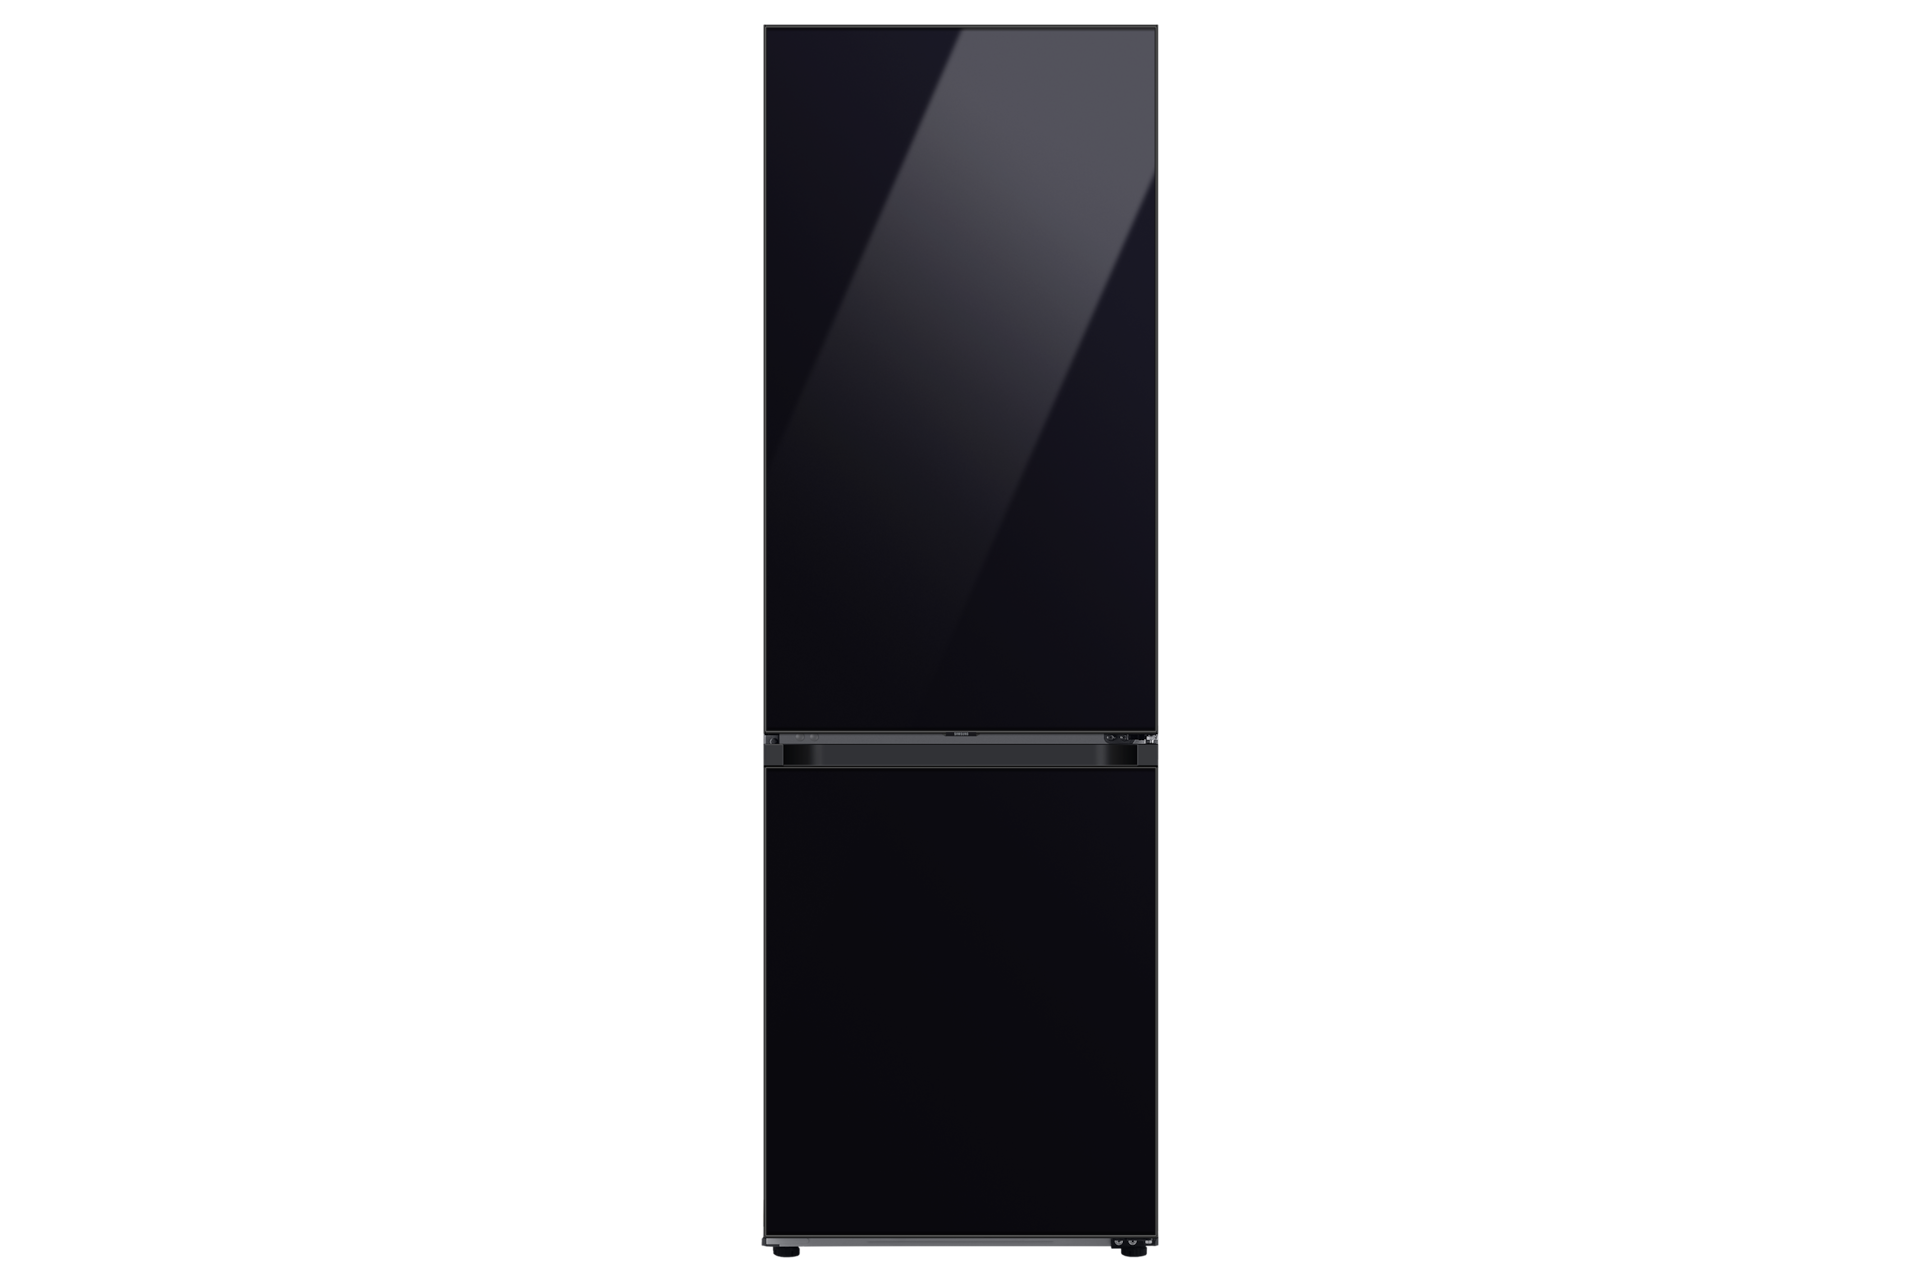 Nowoczesna lodówka Samsung BESPOKE RB34A6B2F22 o pojemności 344l i wysokości 185cm z dolnym zamrażalnikiem i wymiennym panelem szklanym w kolorze głębokiej czerni. Możliwość zmiany frontu pozwala na personalizację designu lodówki